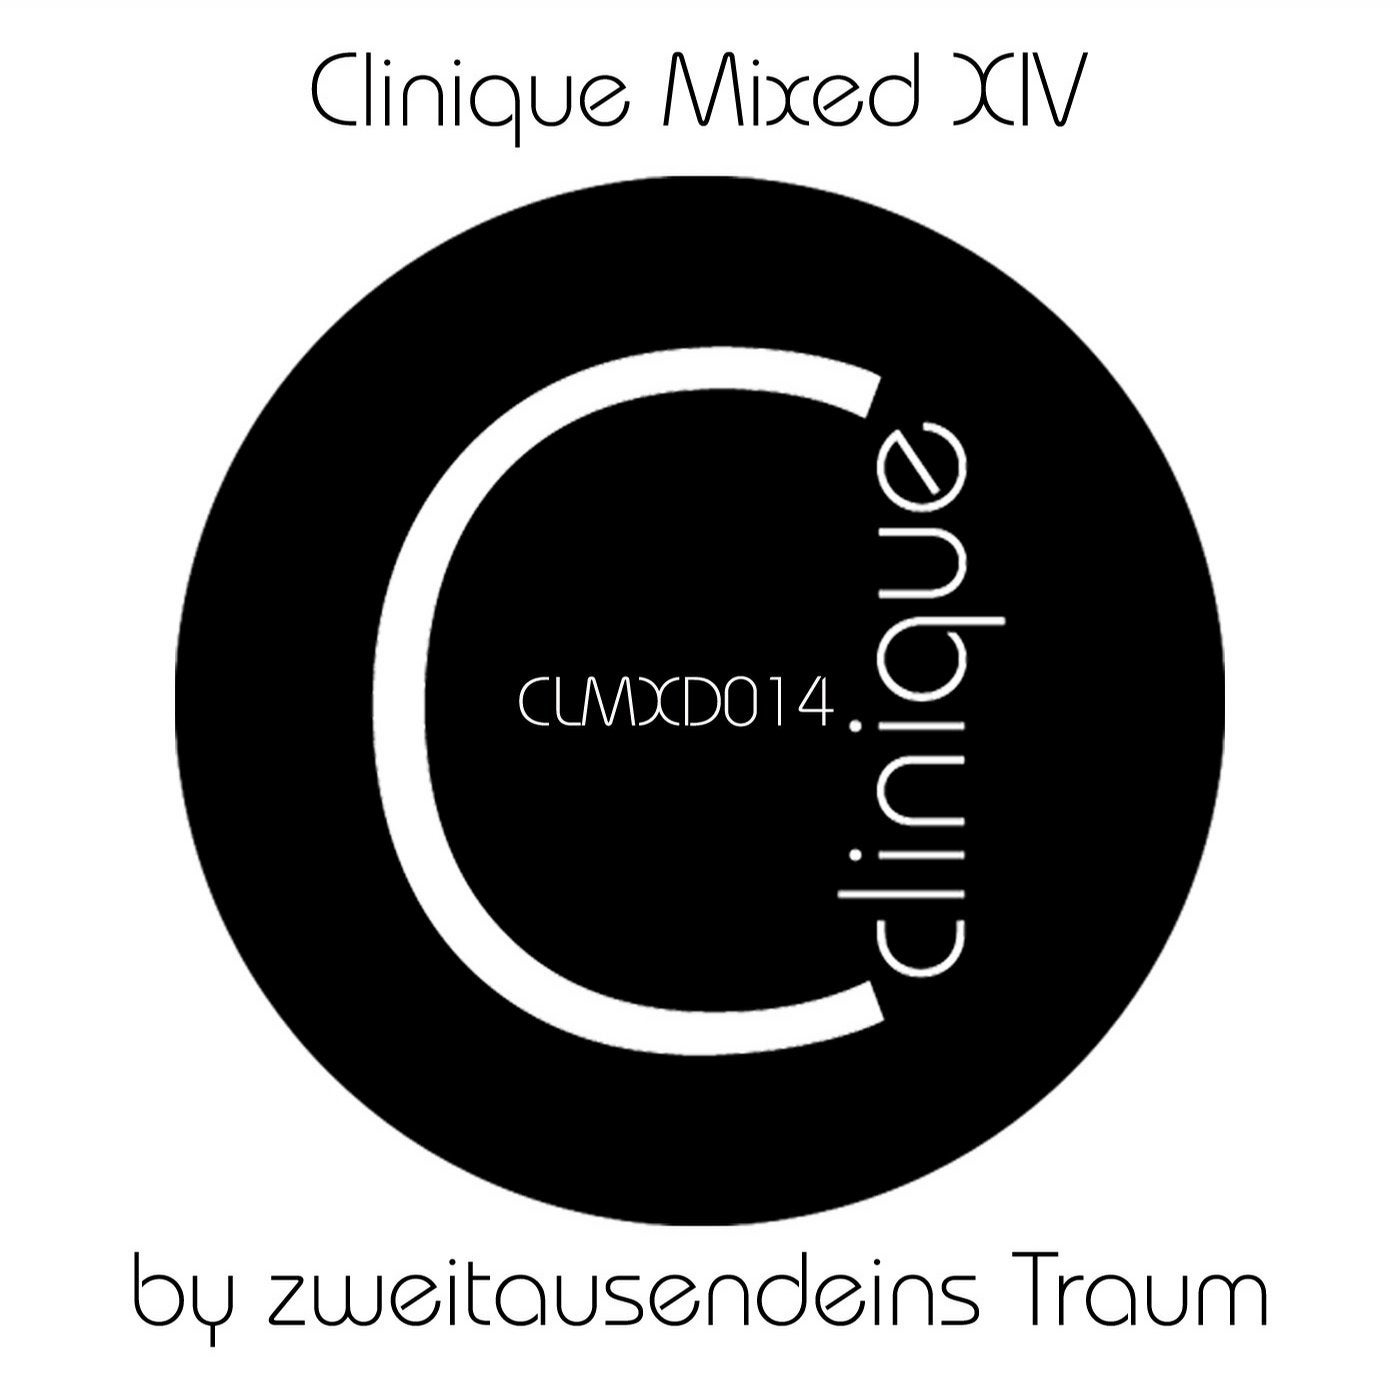 Clinique Mixed XIV